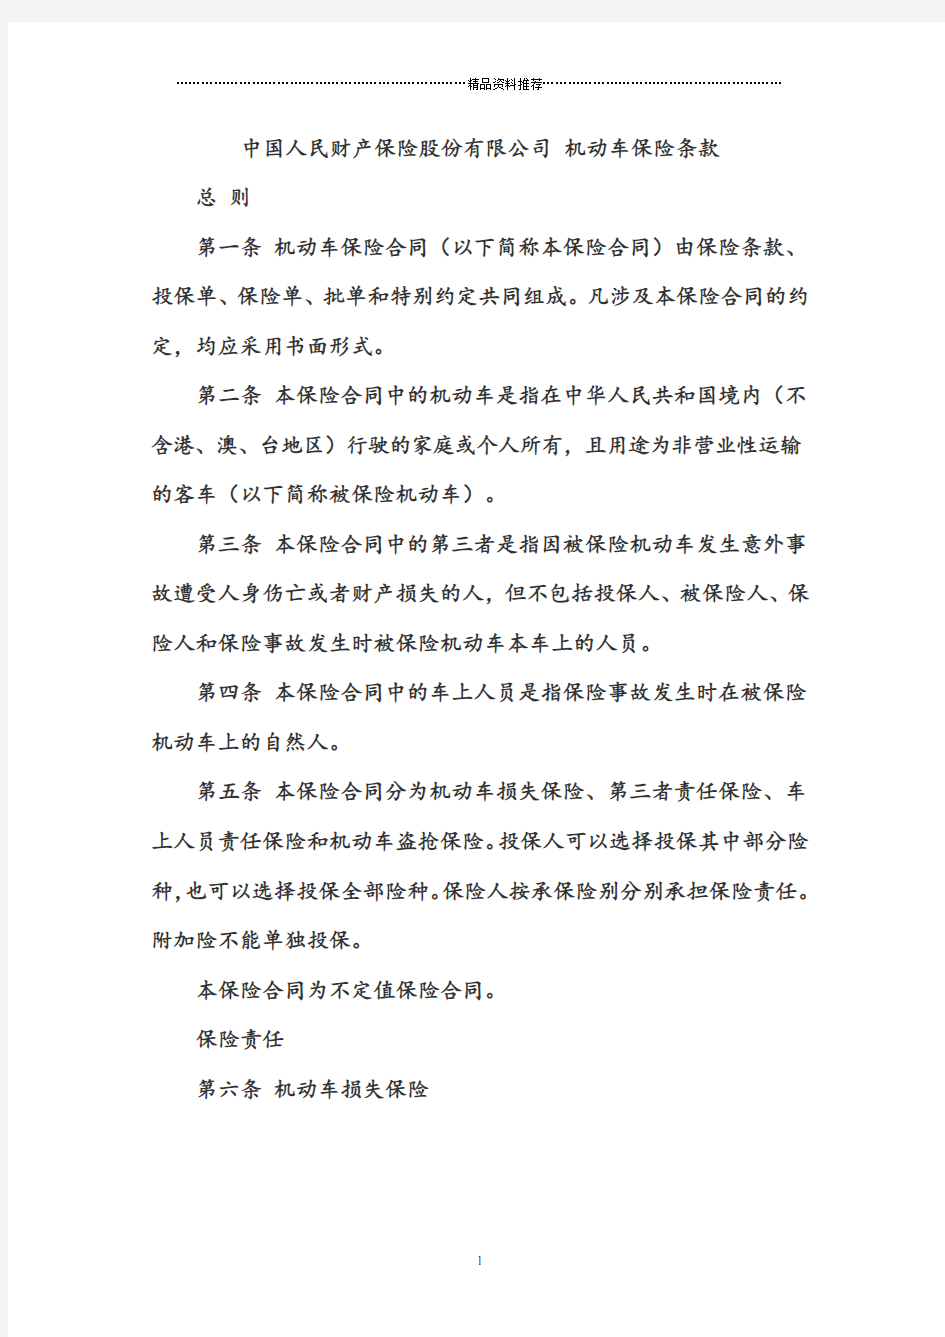 中国人民财产保险股份有限公司机动车保险条款